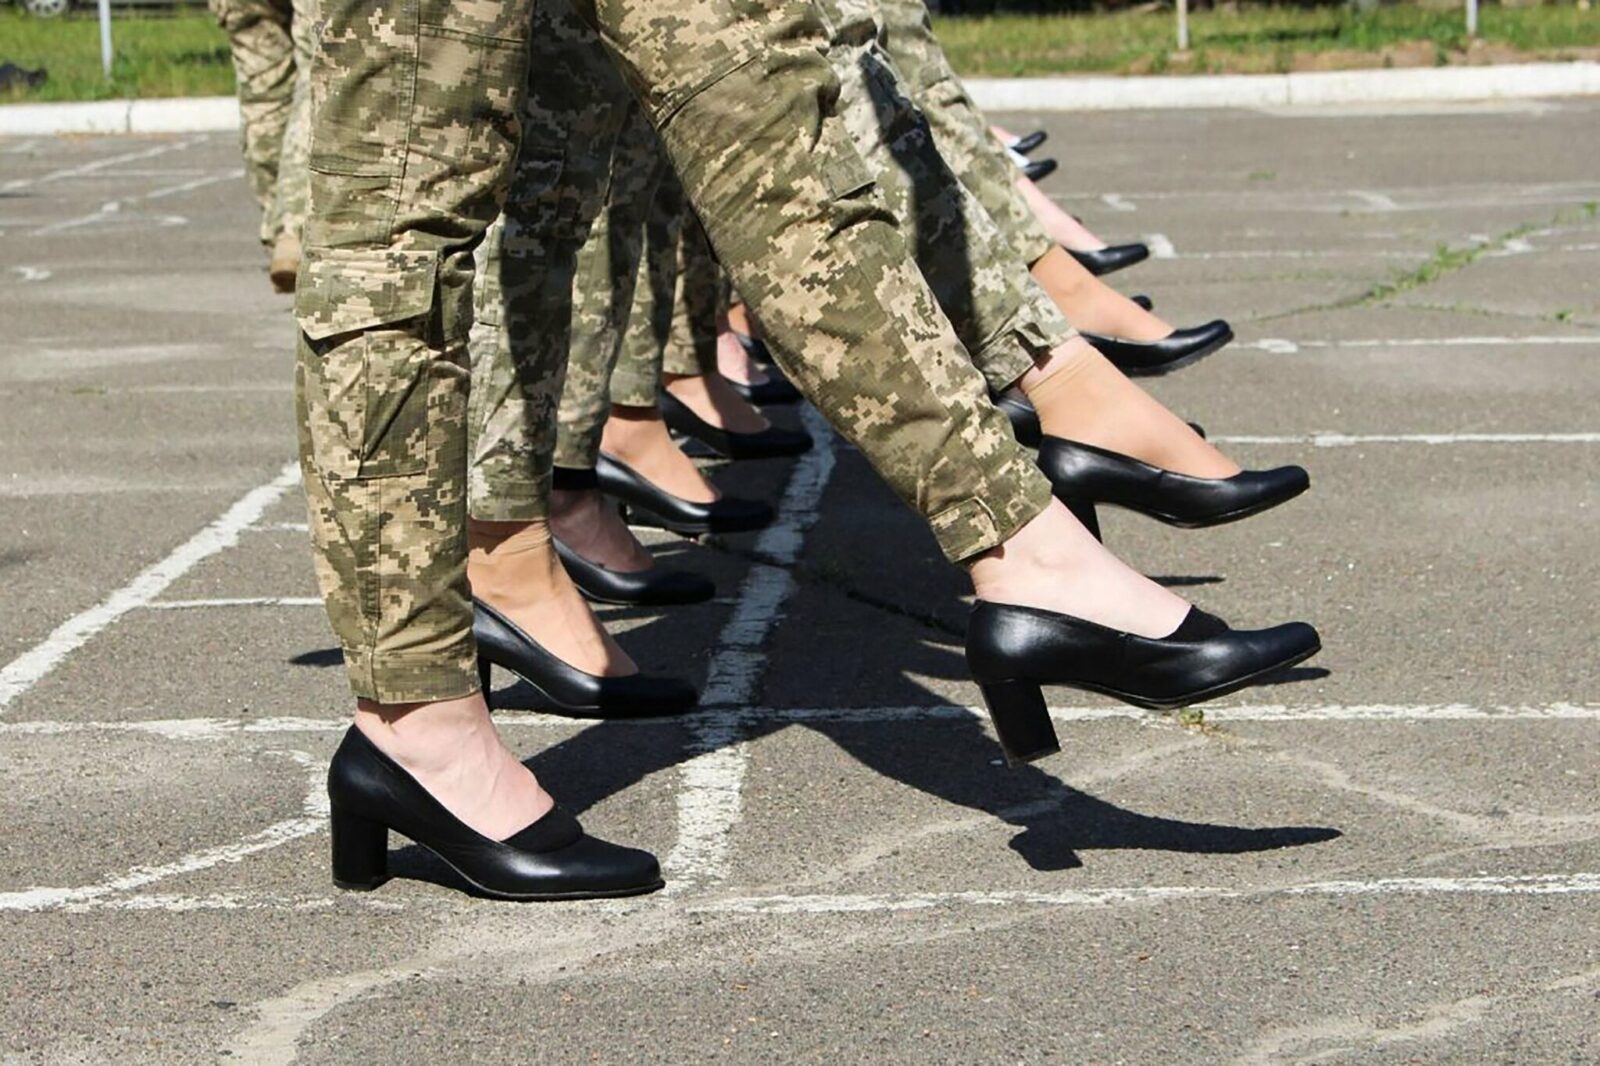 У Раду подали законопроєкт про скасування військового обліку для жінок